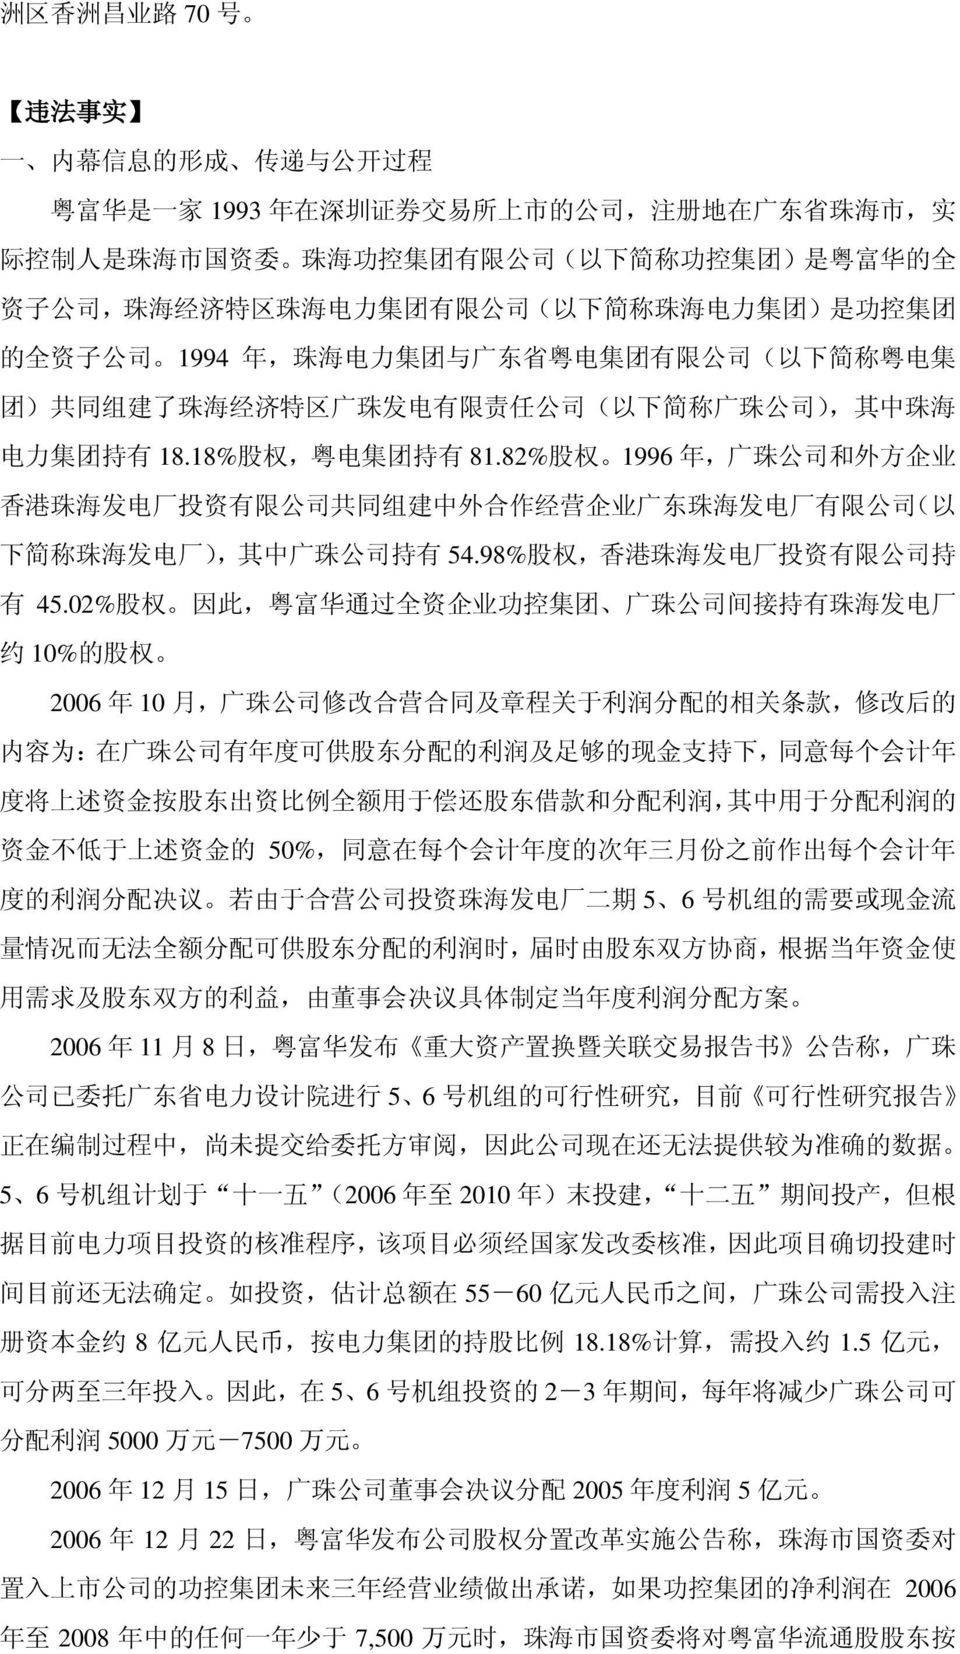 简 称 广 珠 公 司 ), 其 中 珠 海 电 力 集 团 持 有 18.18% 股 权, 粤 电 集 团 持 有 81.